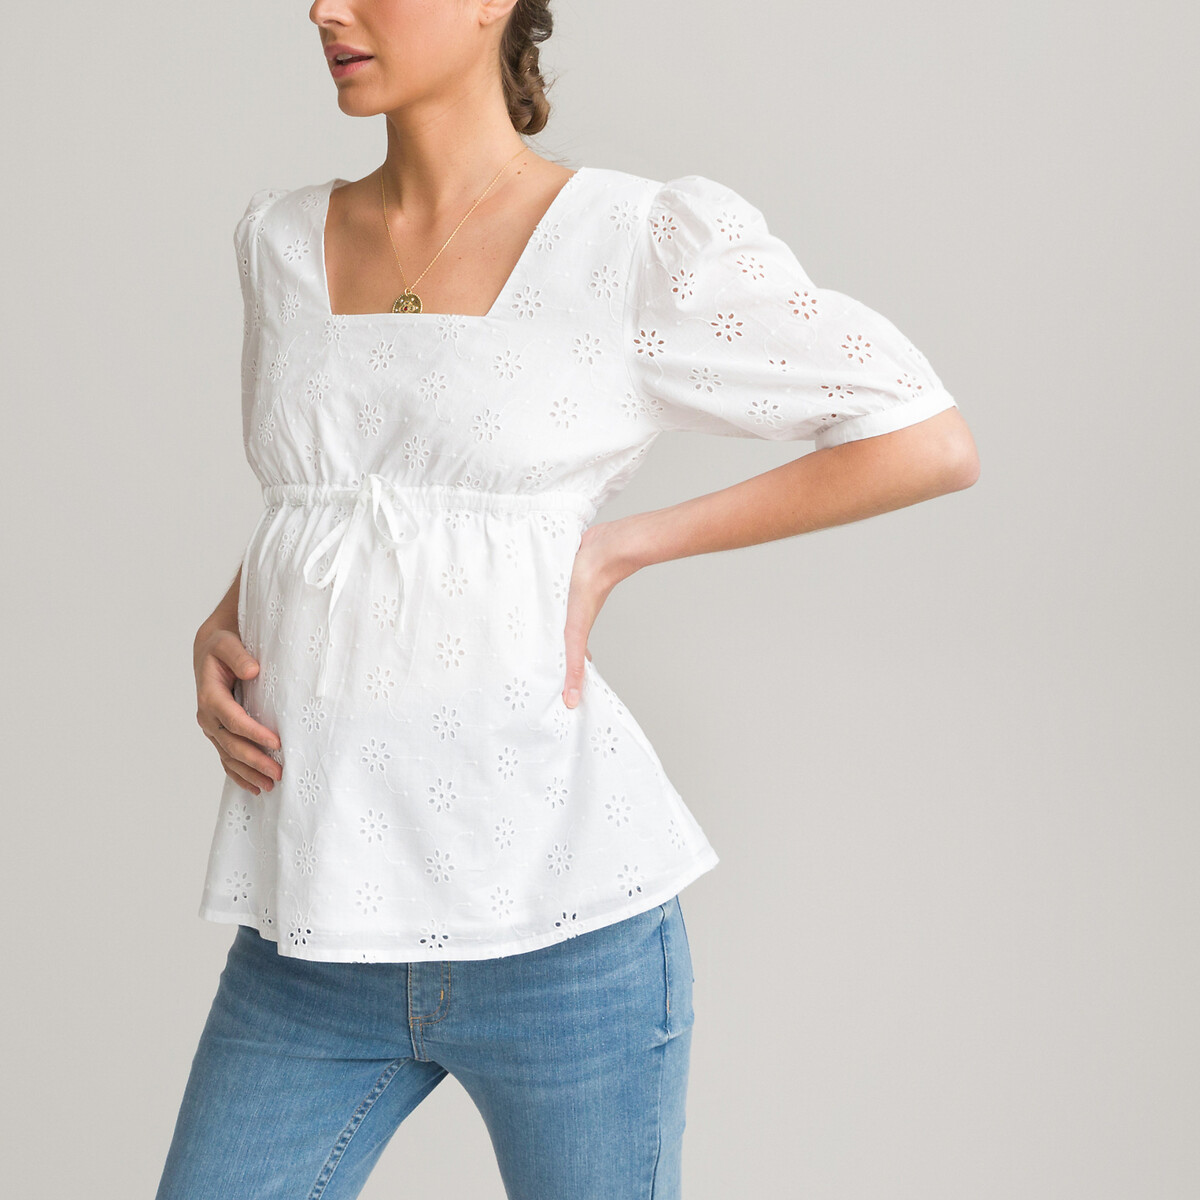 Blusa para grávida, decote quadrado, bordado inglês